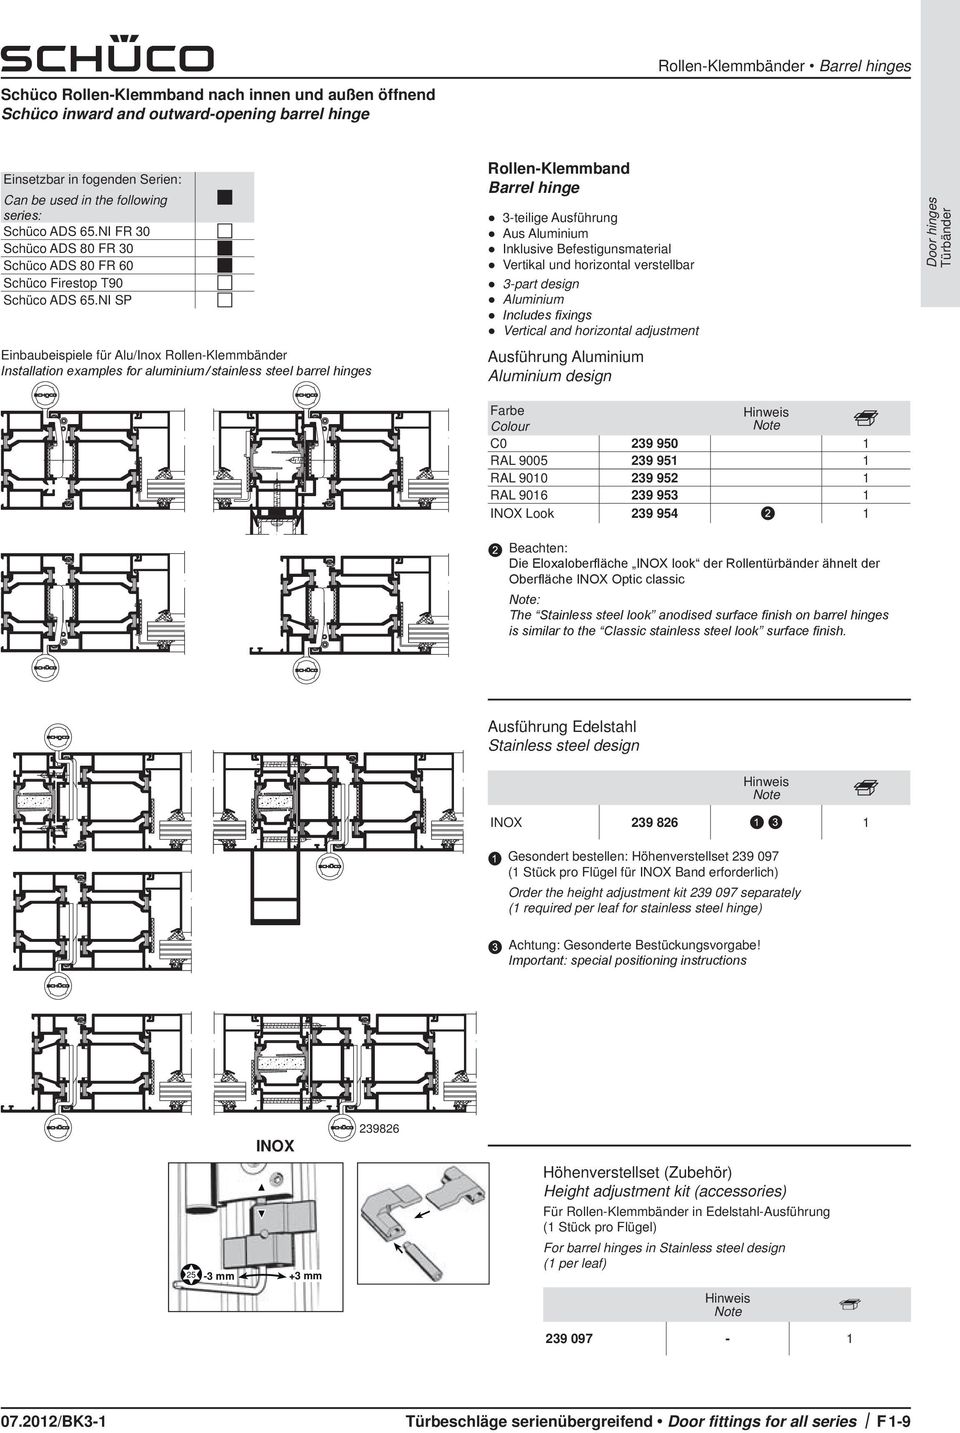 NI SP Einbaubeispiele für Alu/Inox Rollen-Klemmbänder Installation examples for aluminium / stainless steel barrel hinges Rollen-Klemmband Barrel hinge 3-teilige Ausführung Aus Aluminium Inklusive